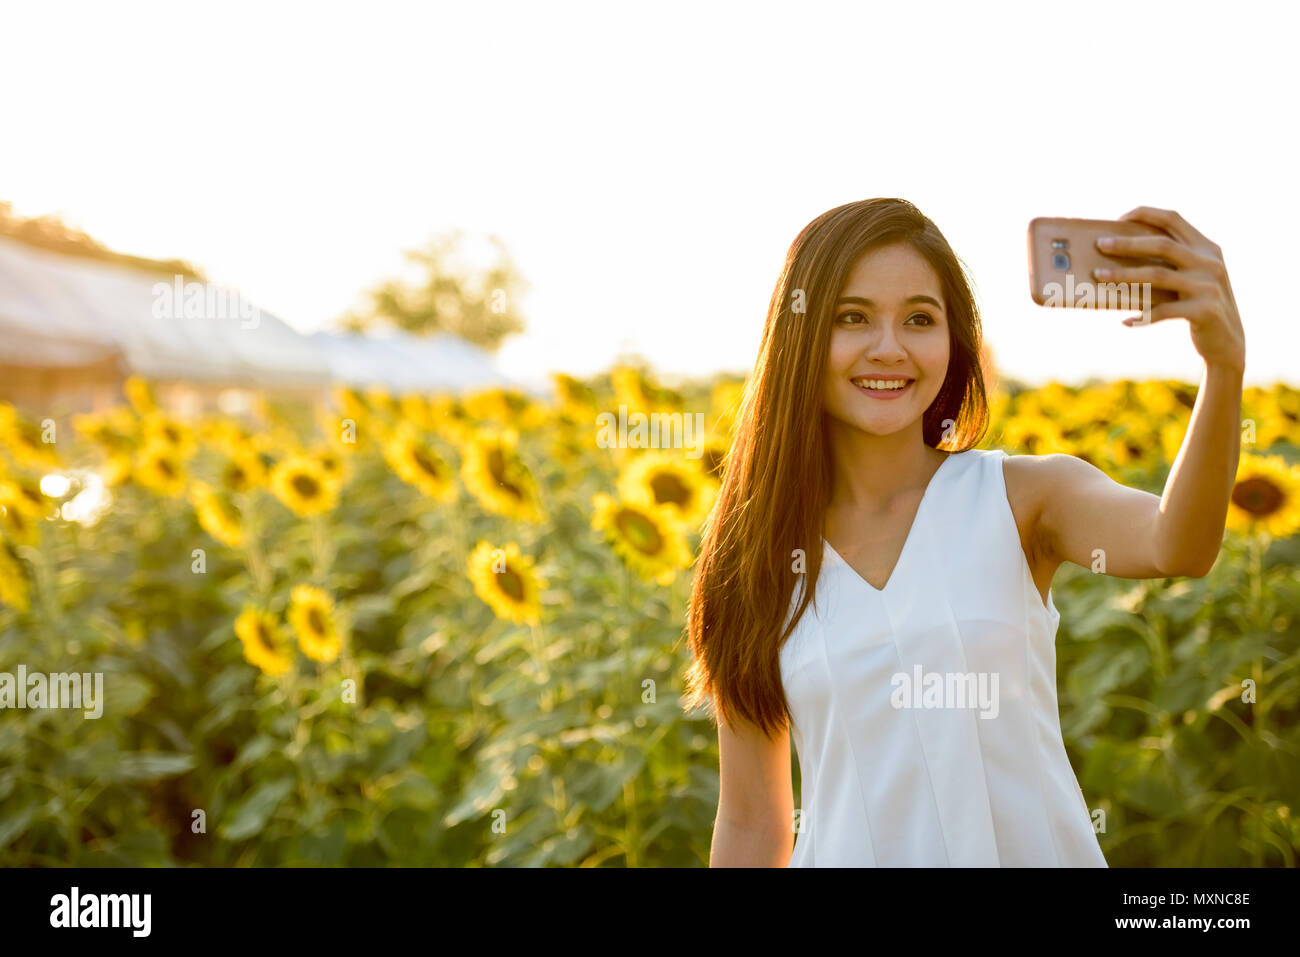 Junge asiatische Frau glücklich lächelnd während der Einnahme von selfie Bild mit Stockfoto